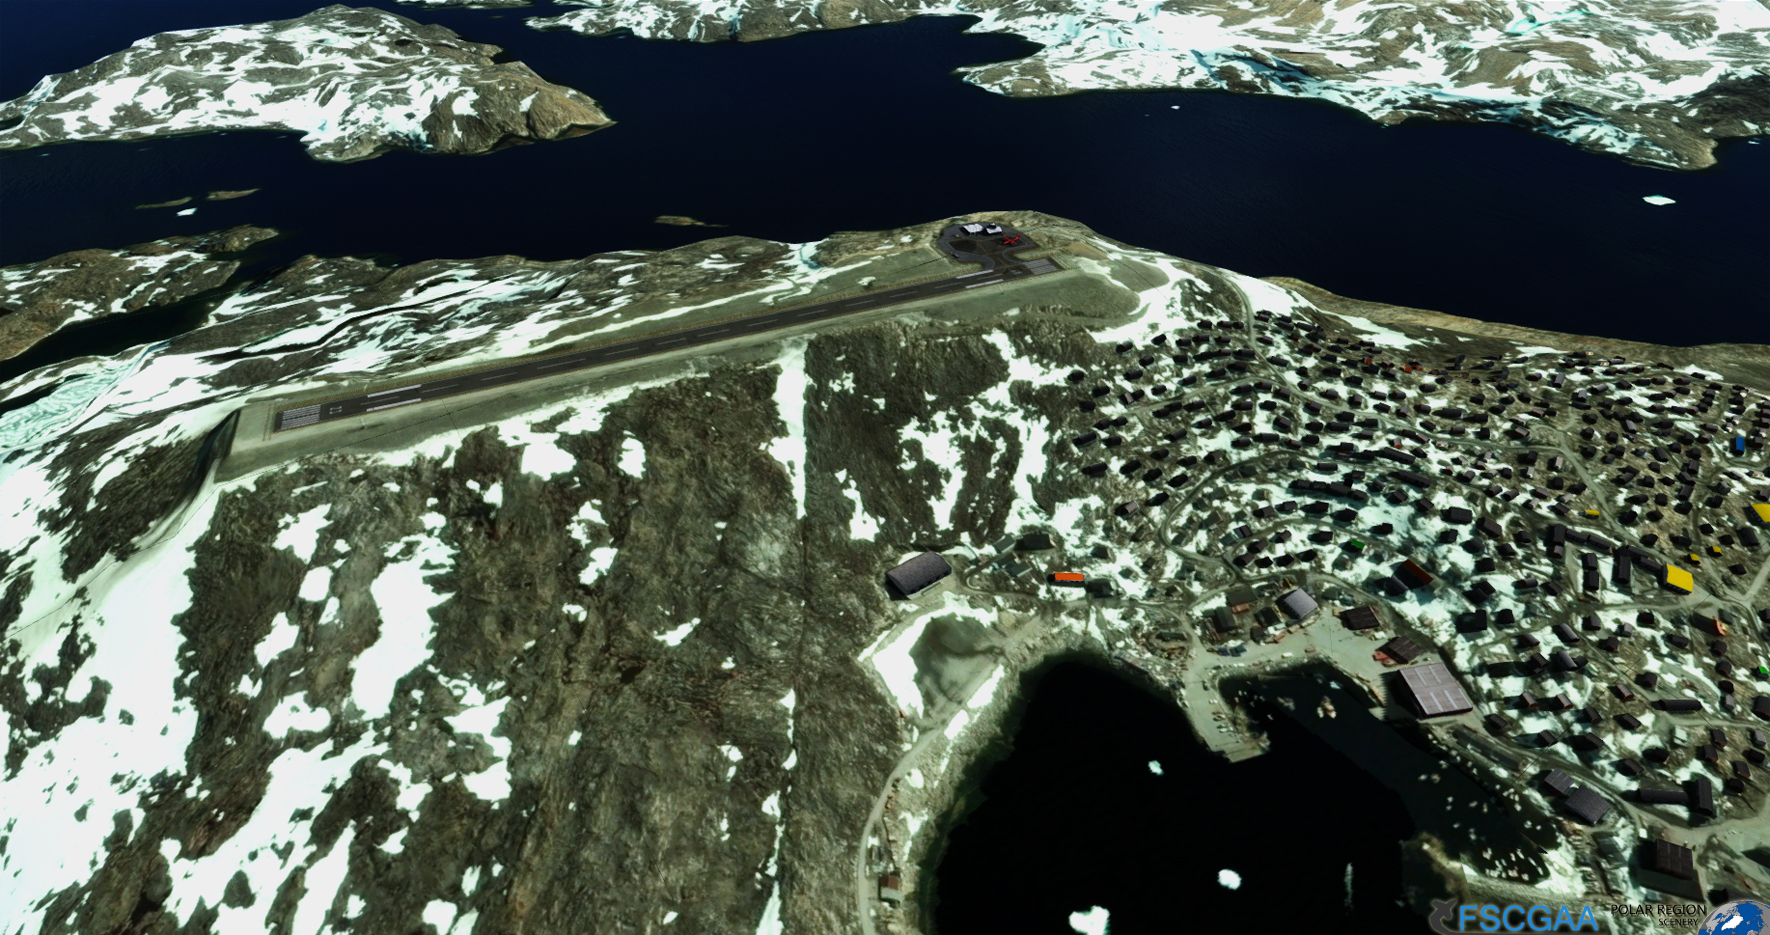 格陵兰岛乌佩纳维克机场 for P3Dv4 发布-577 